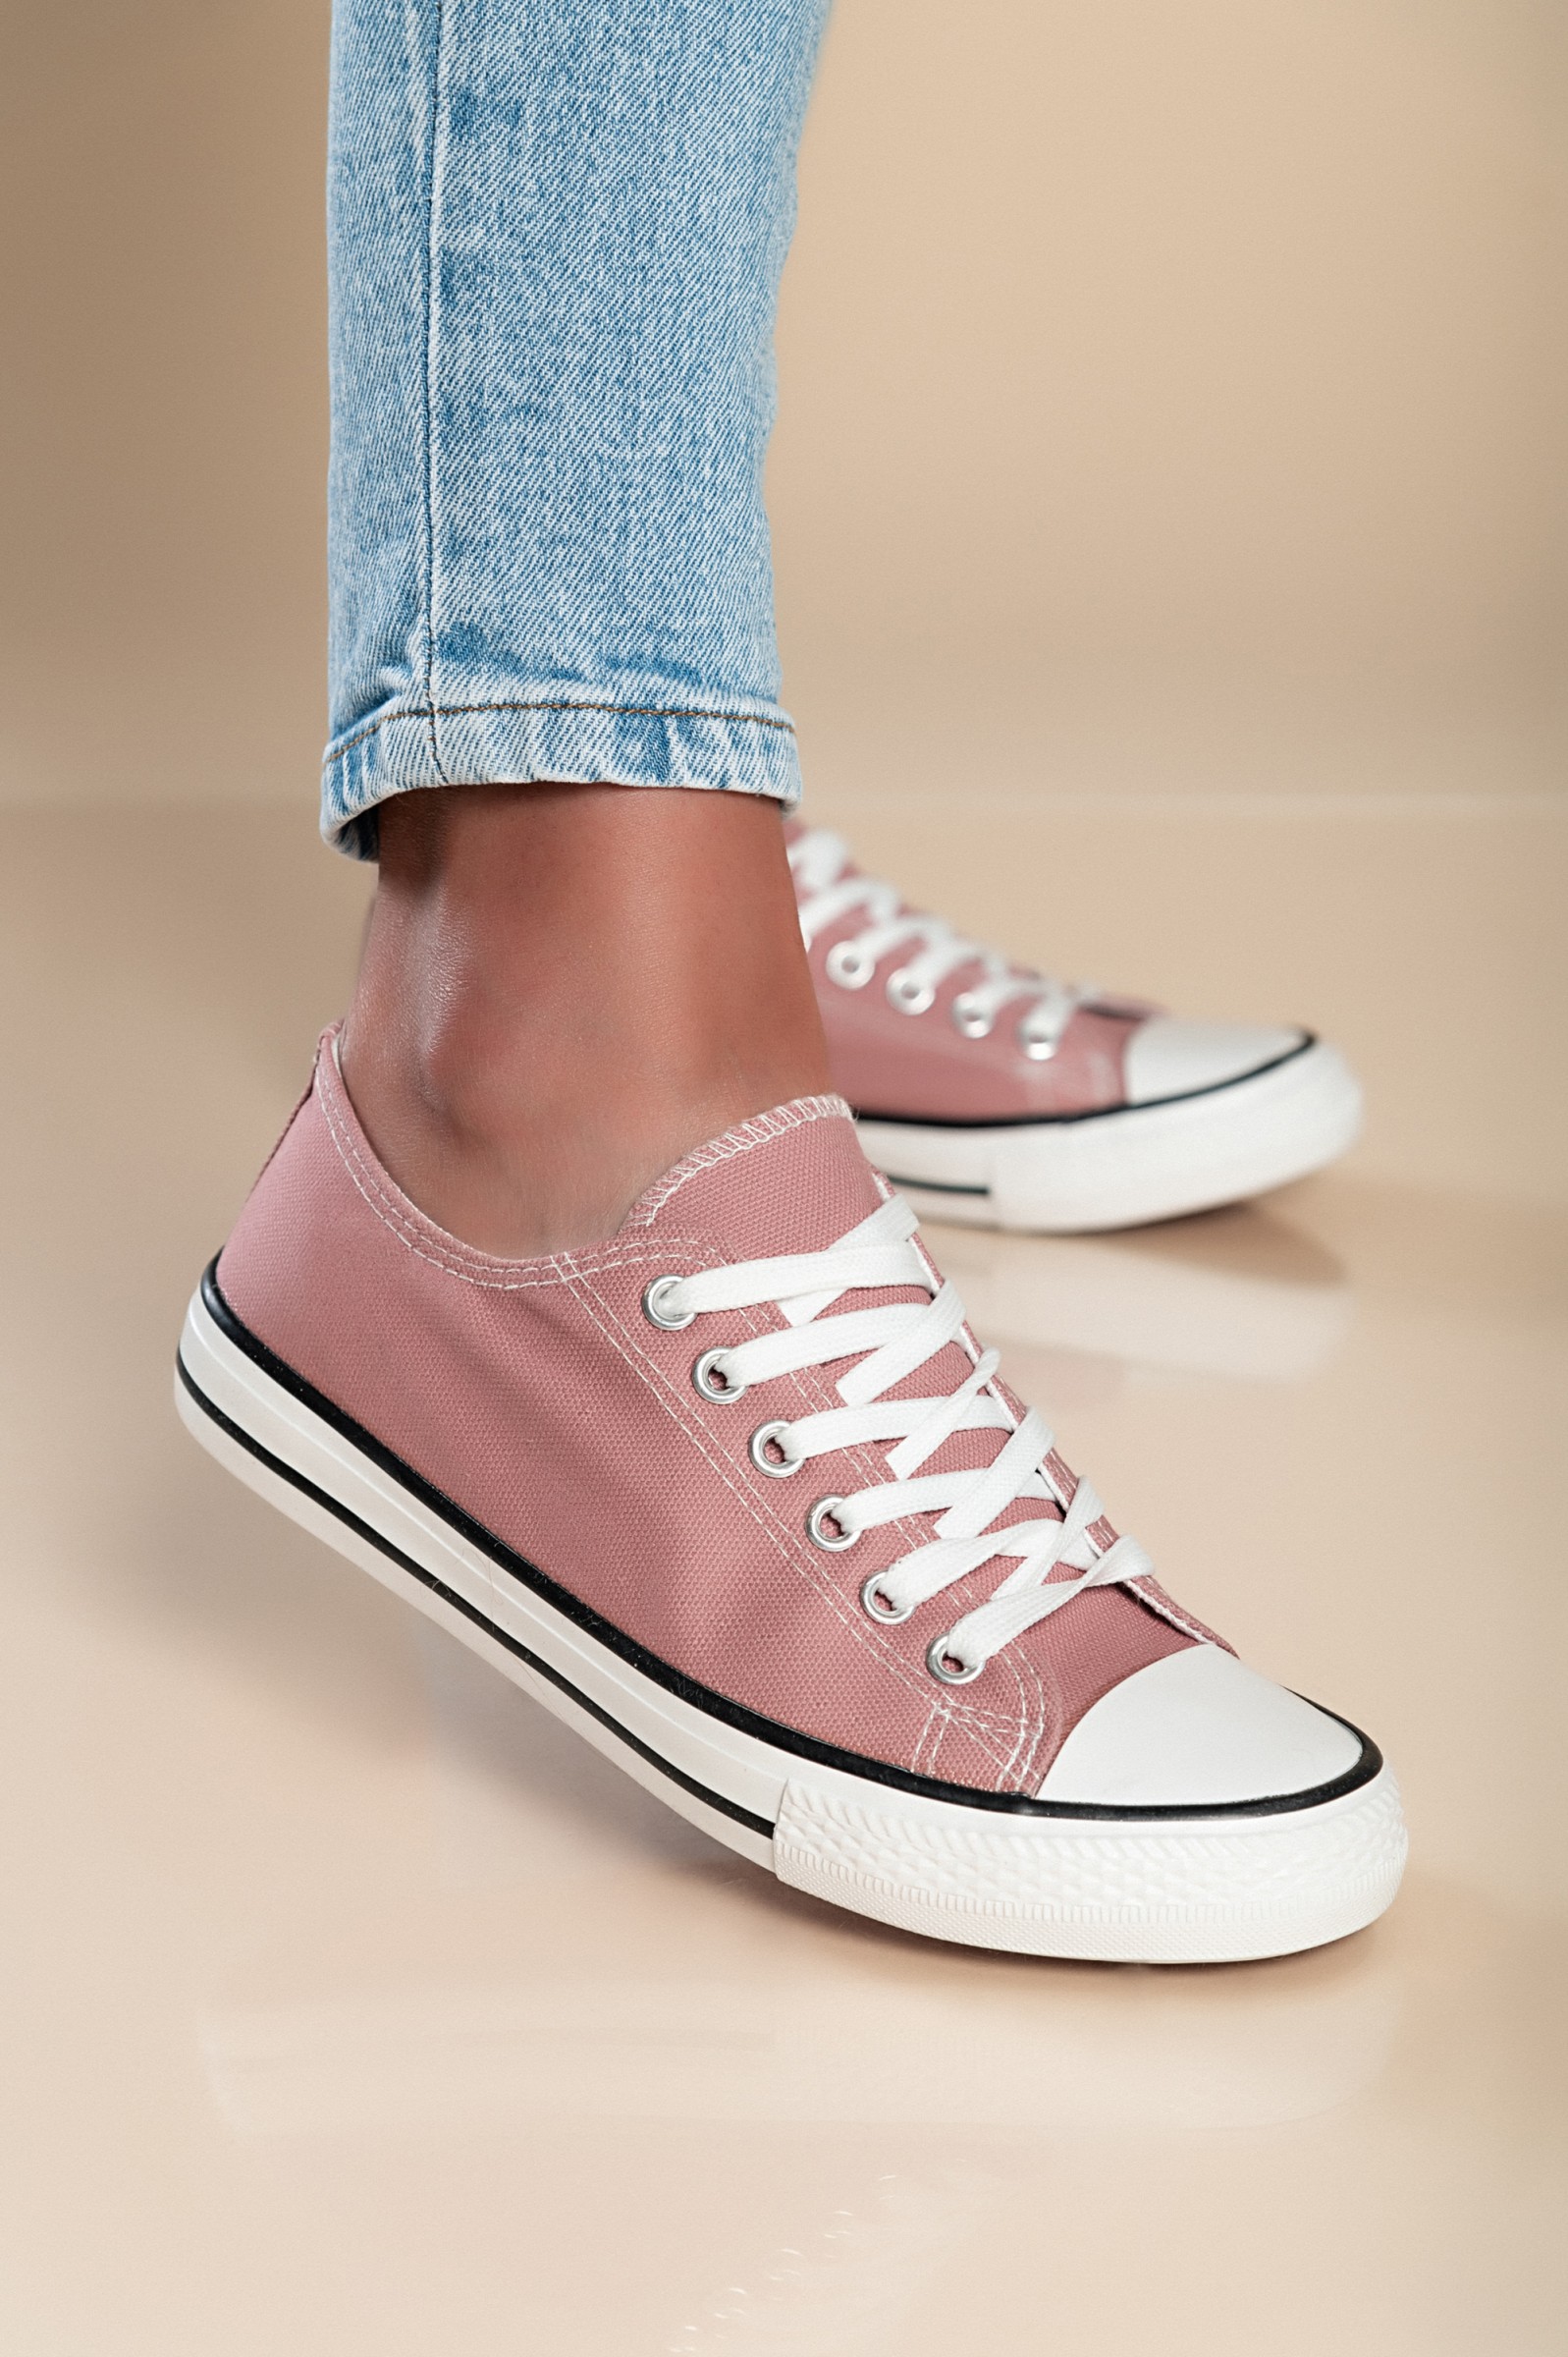 Zapatillas de tela, rosa.